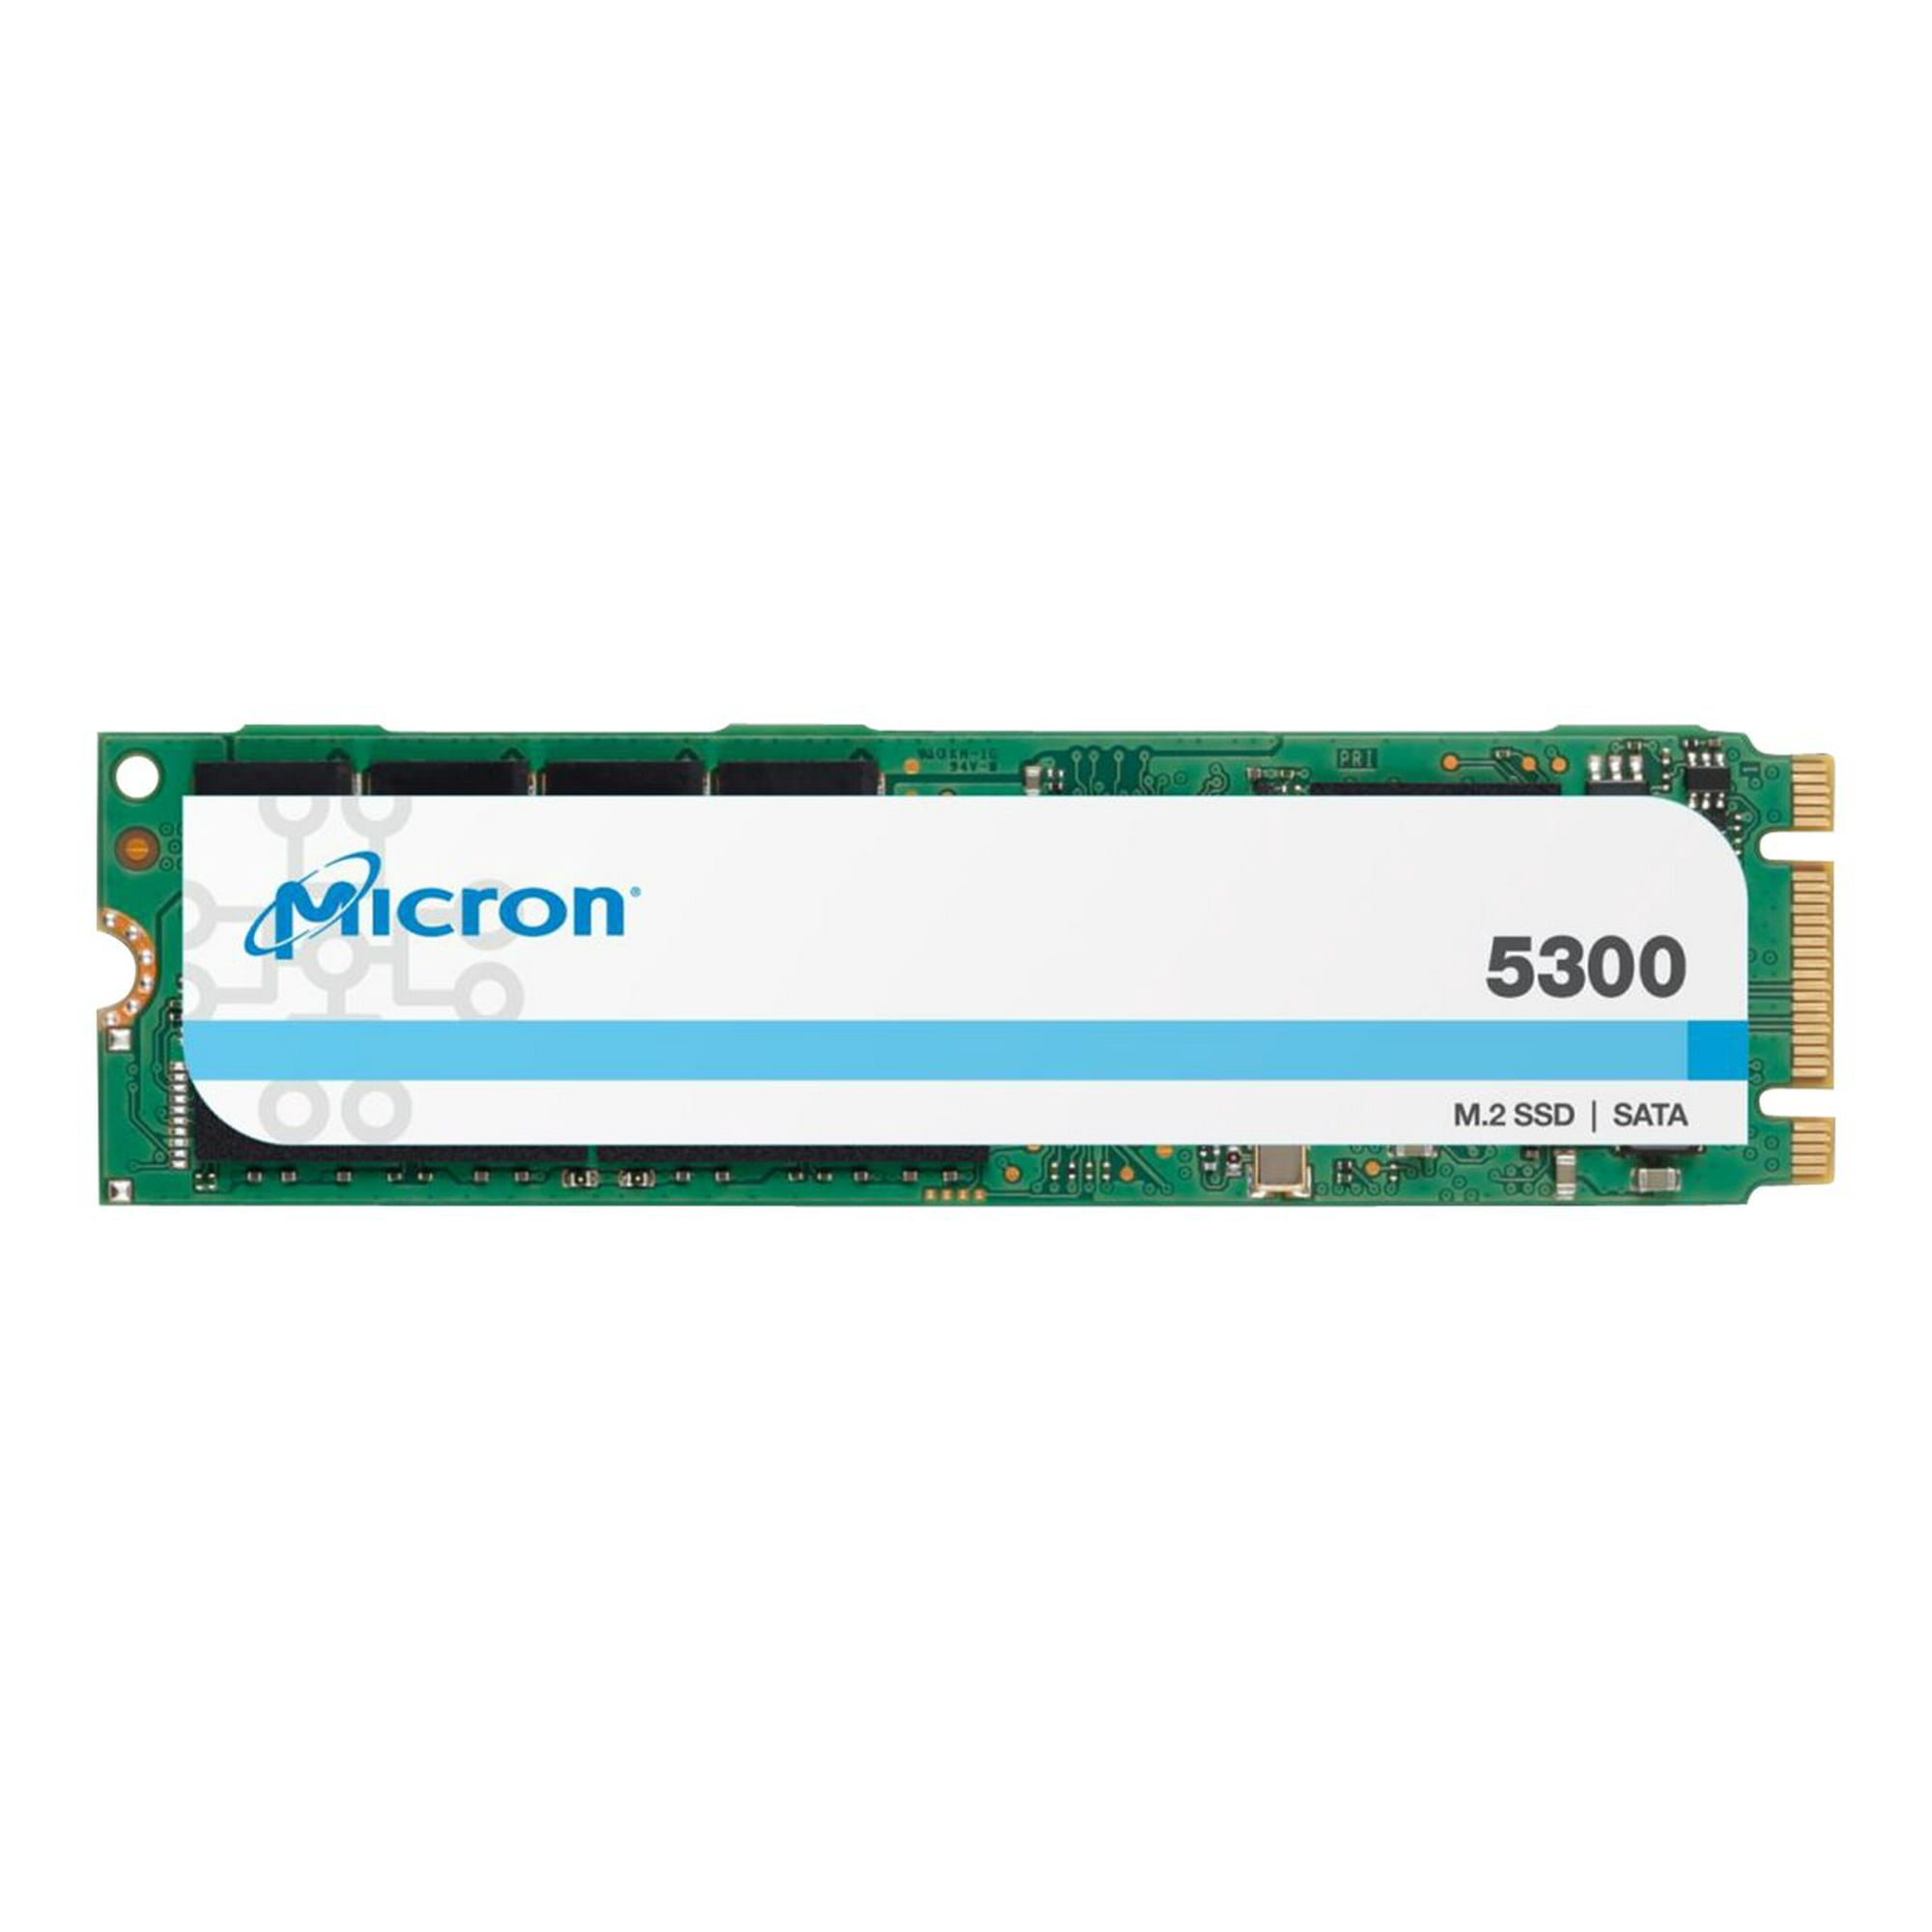 Micron 5300 PRO - SSD - 240 GB - internal - M.2 2280 - SATA 6Gb/s